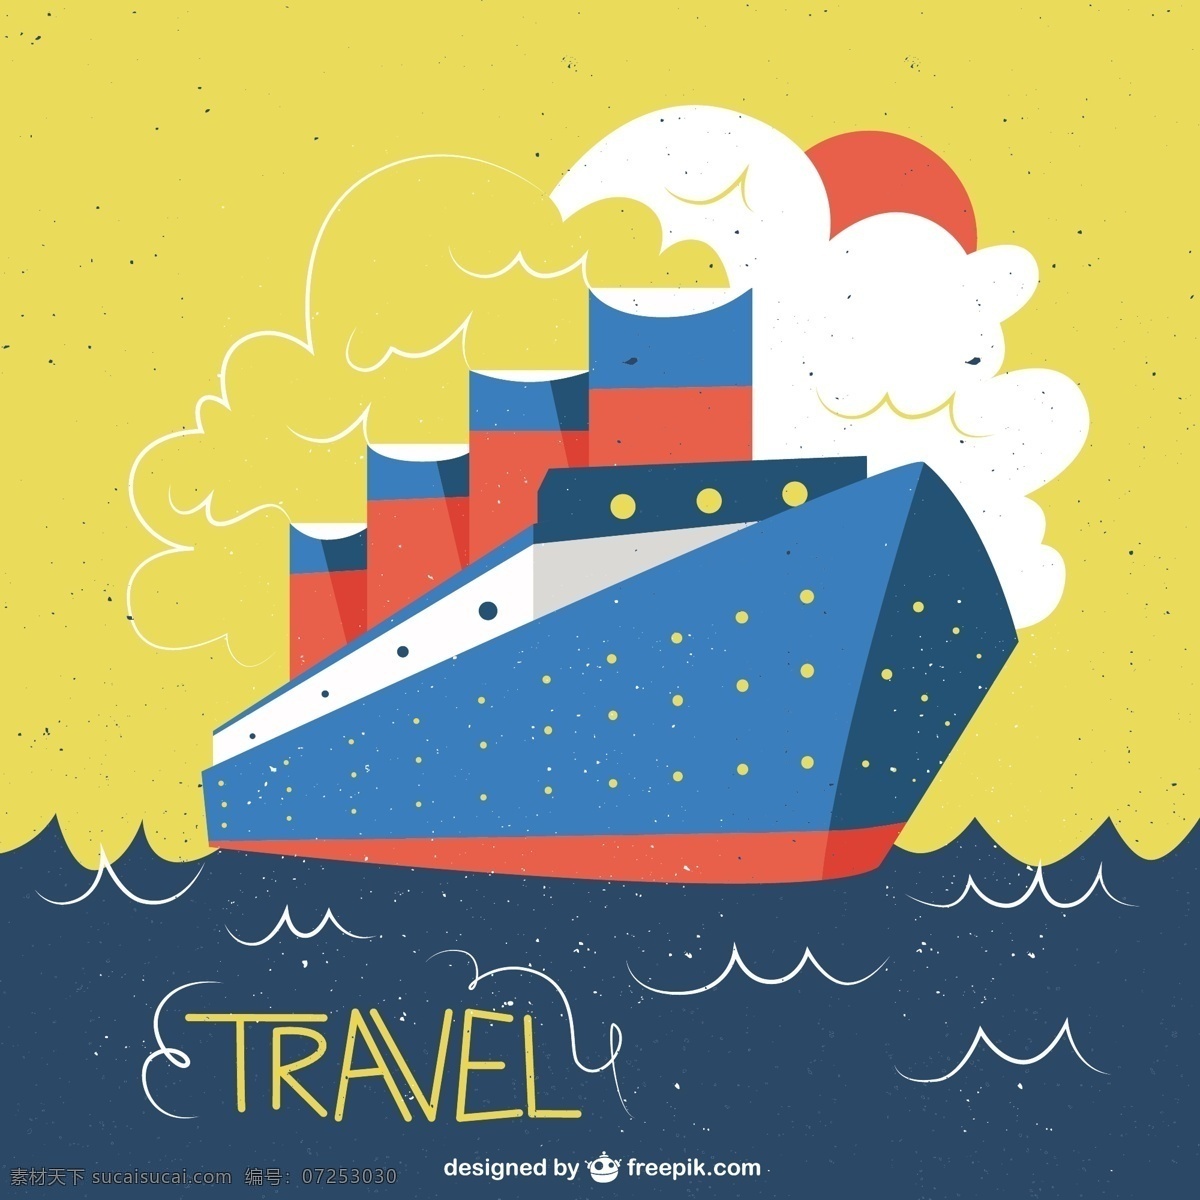 船舶 老式 风格 说明 复古 旅游 太阳 世界 海洋 天空 图标 平面 云 交通 度假 插图 平面图标 旅行 节日 黄色